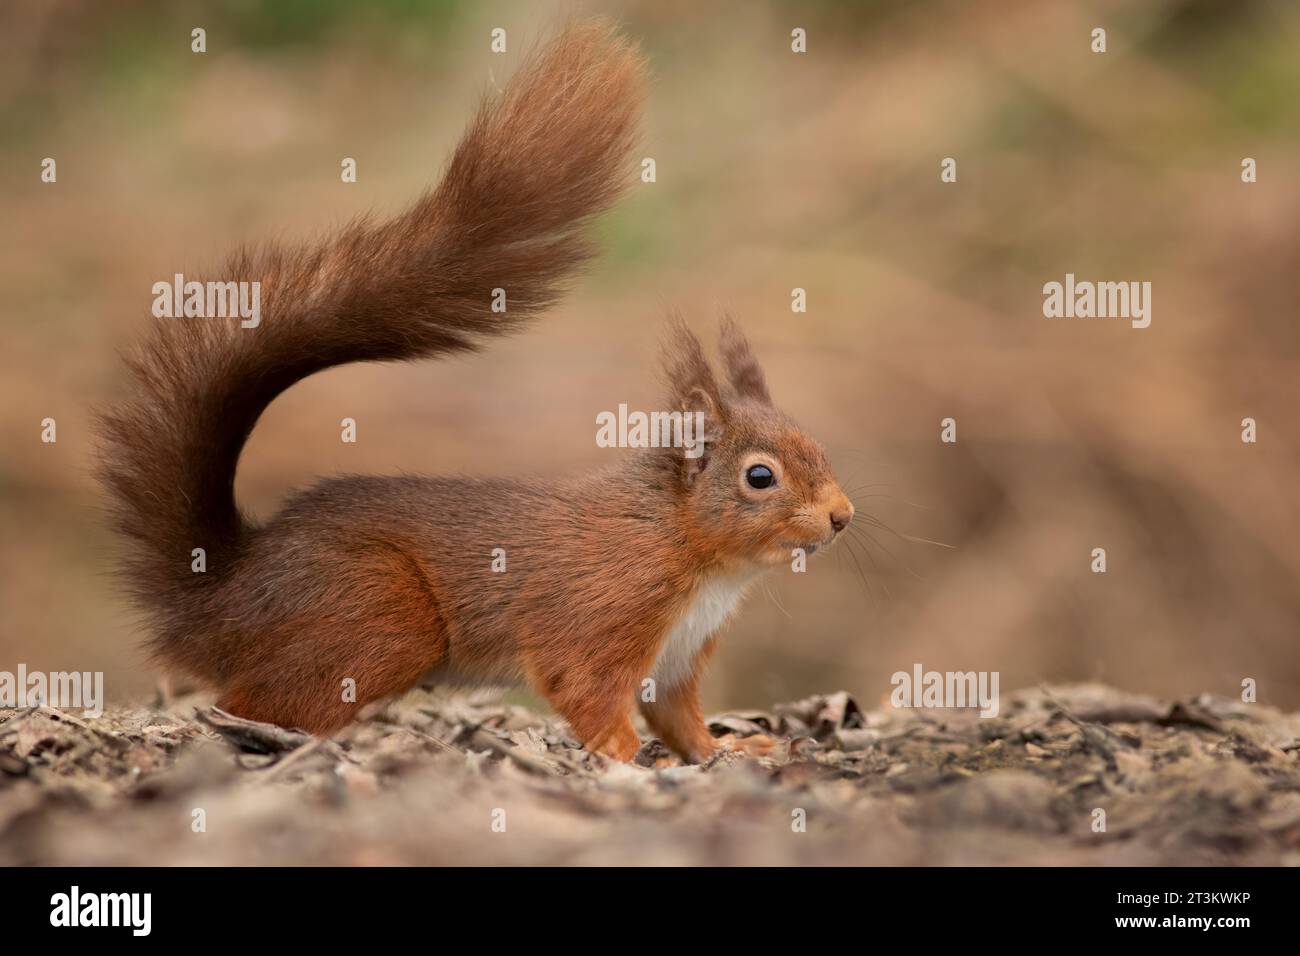 Un gros plan d'un écureuil roux avec des touffes d'oreilles. Il est pris au niveau du sol et montre sa queue touffue. Espace de texte d'arrière-plan flou naturel Banque D'Images